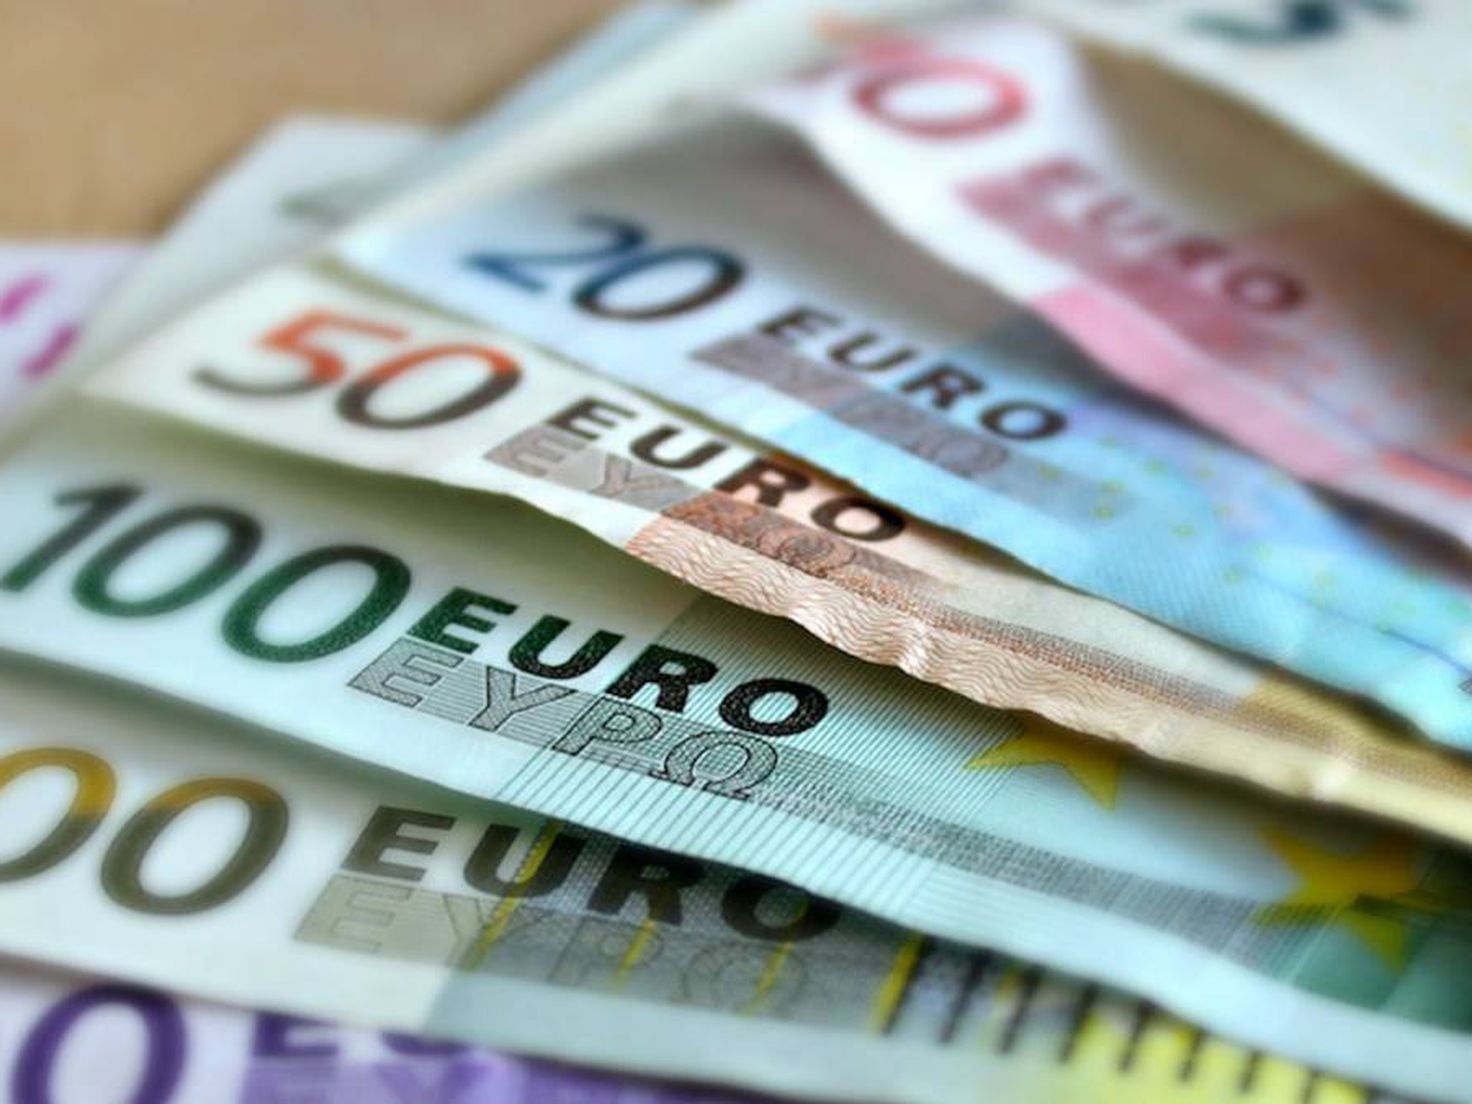 Cómo reconocer billetes y monedas falsos de euro con el móvil - Meristation